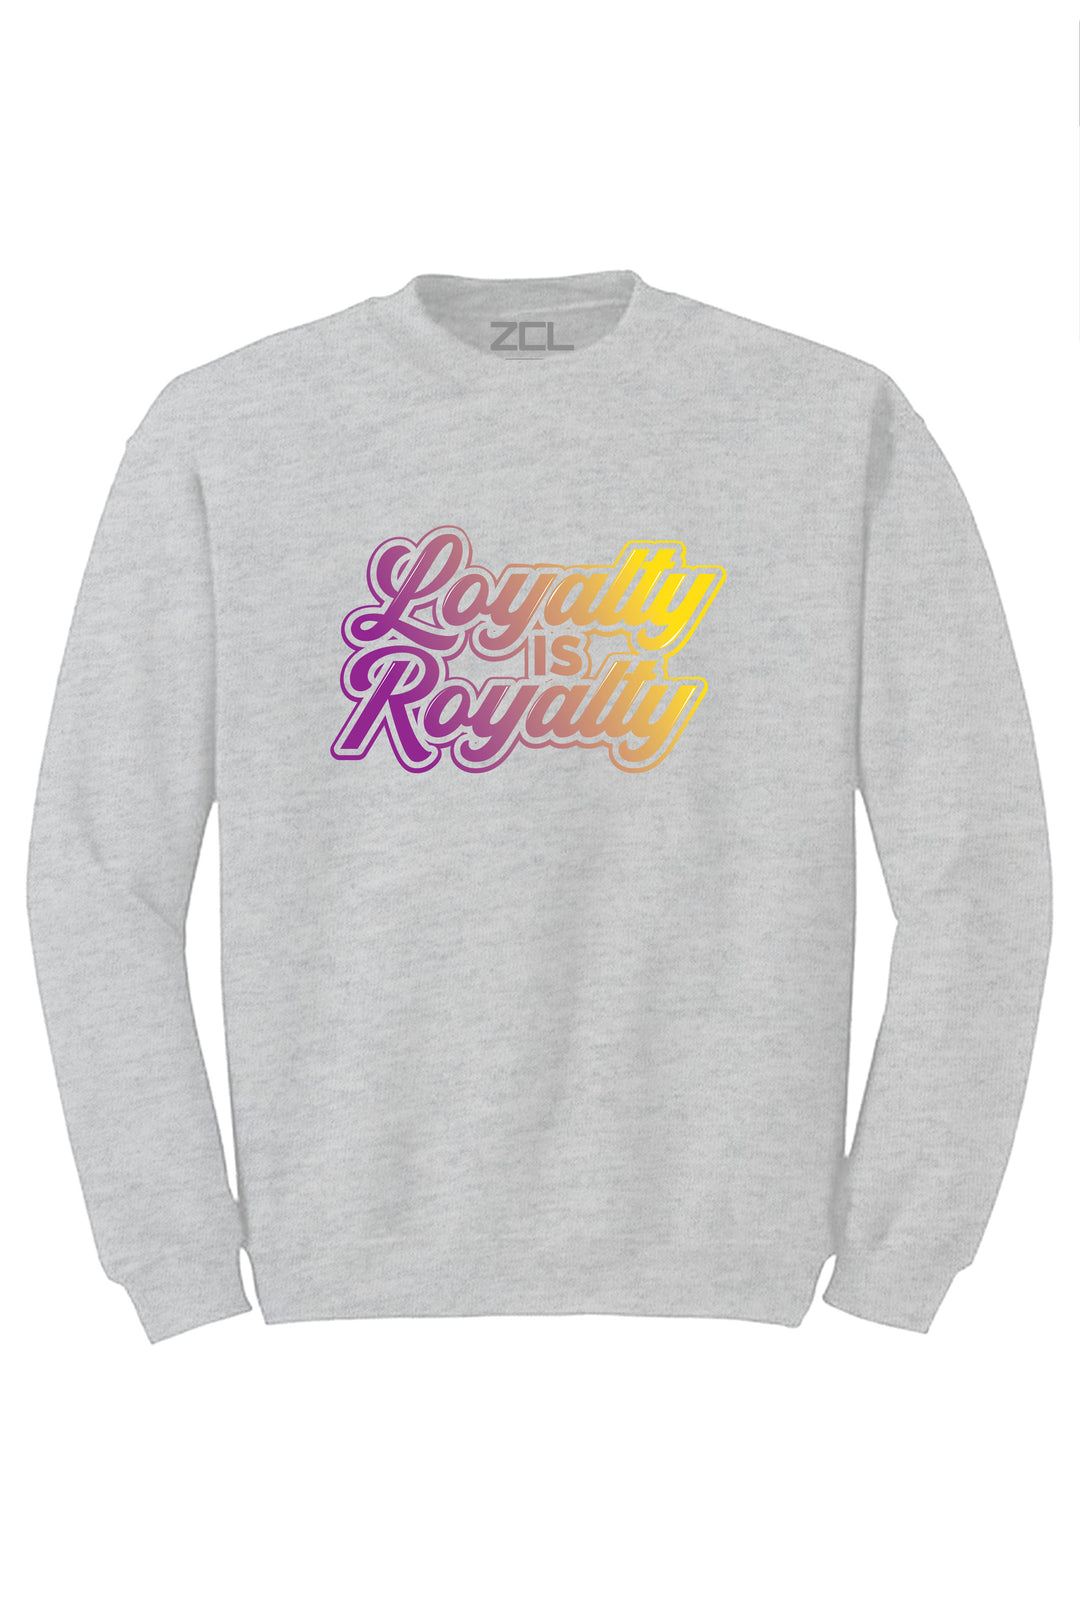 Loyalty Is Royalty Crewneck Sweatshirt (Purple - Yellow Logo) - Zamage